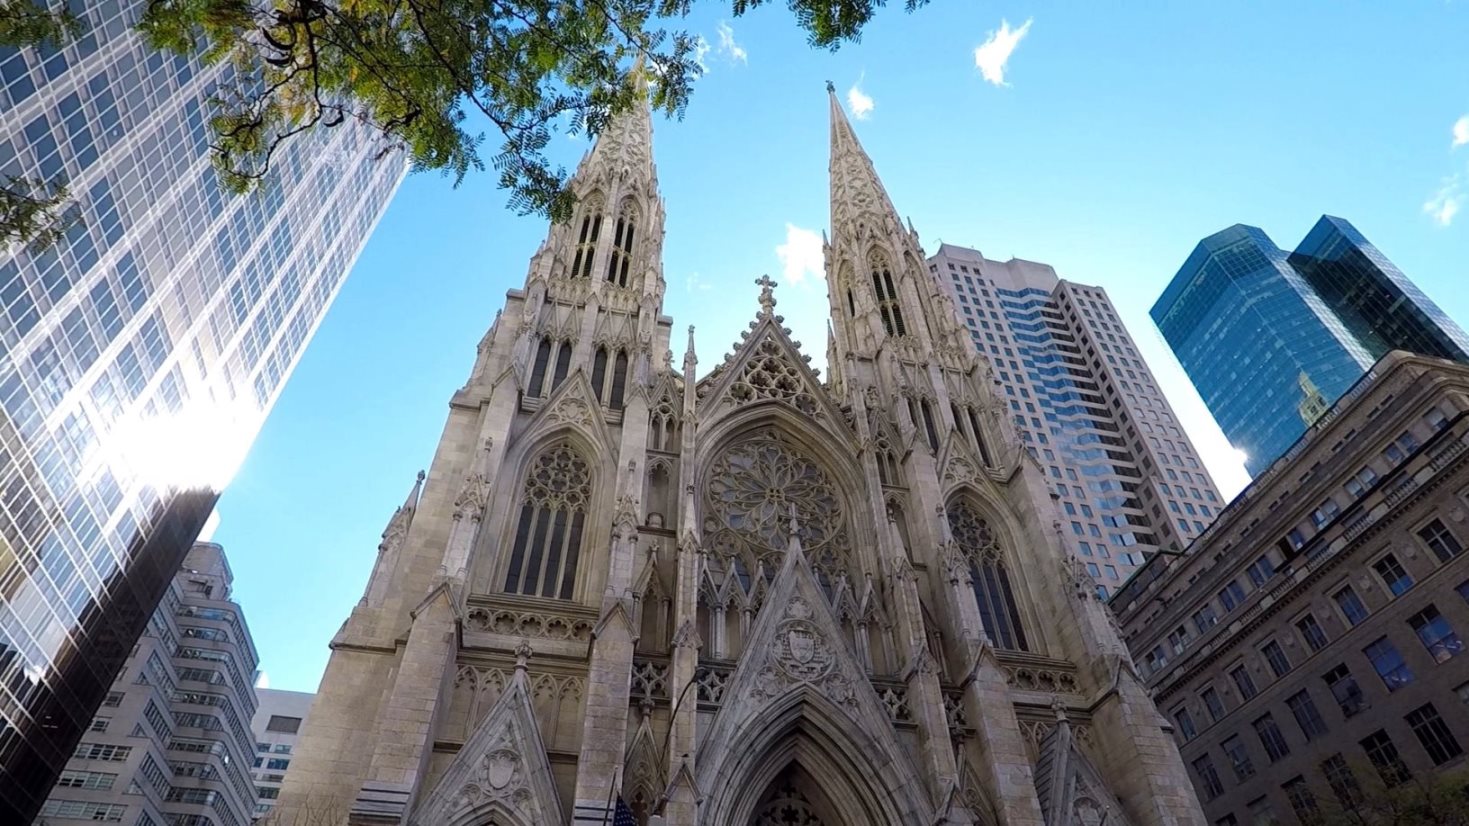 St. Patrick's Cathedral - gegenüber dem Rockefeller Center